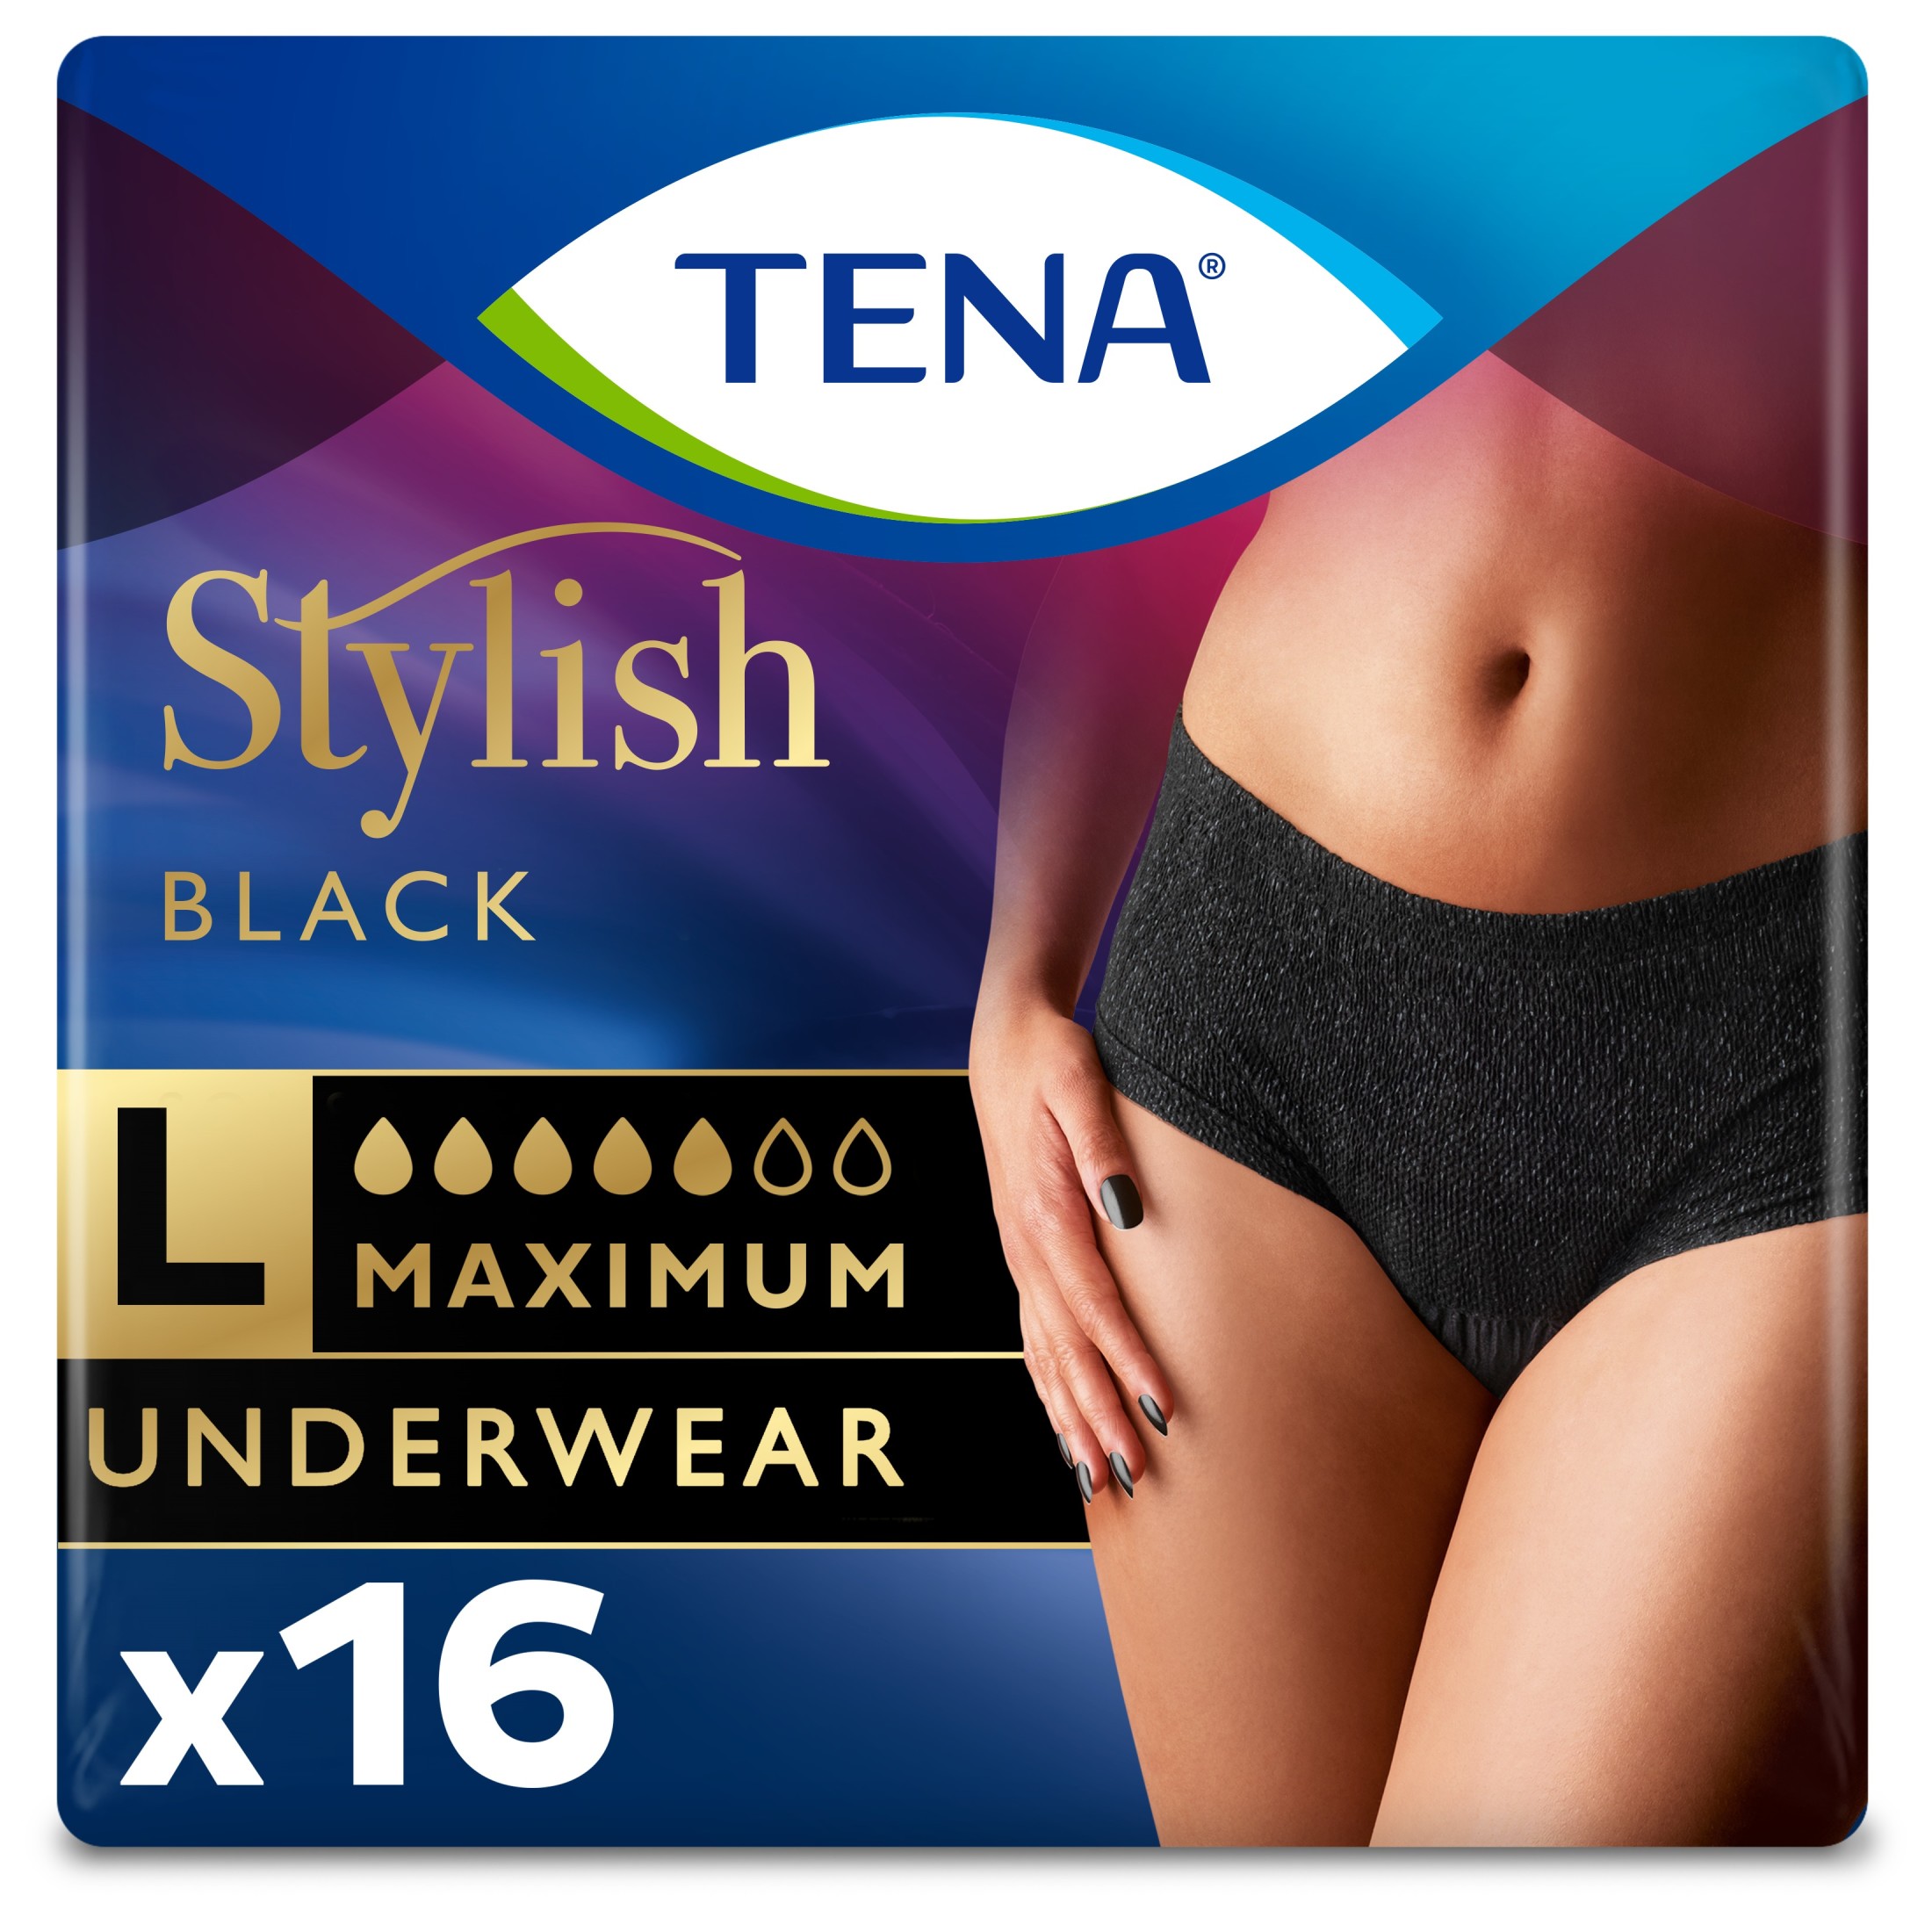 Tena Stylish Black Underwear for Women, Maximum, Large, 16 Ct - image 1 of 11